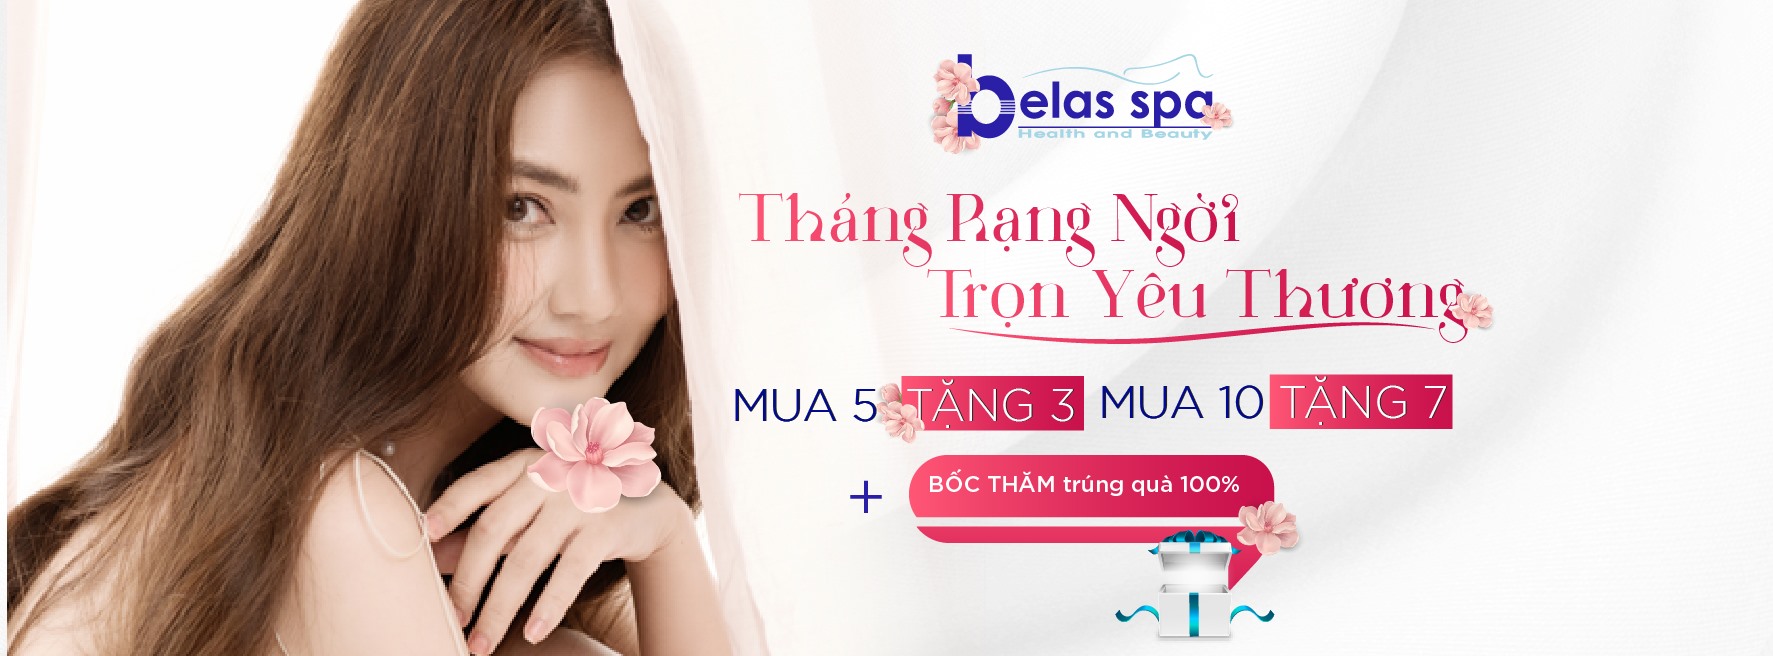 Top 8 Spa uy tín và chất lượng nhất tại Đà Nẵng -  Belas Spa